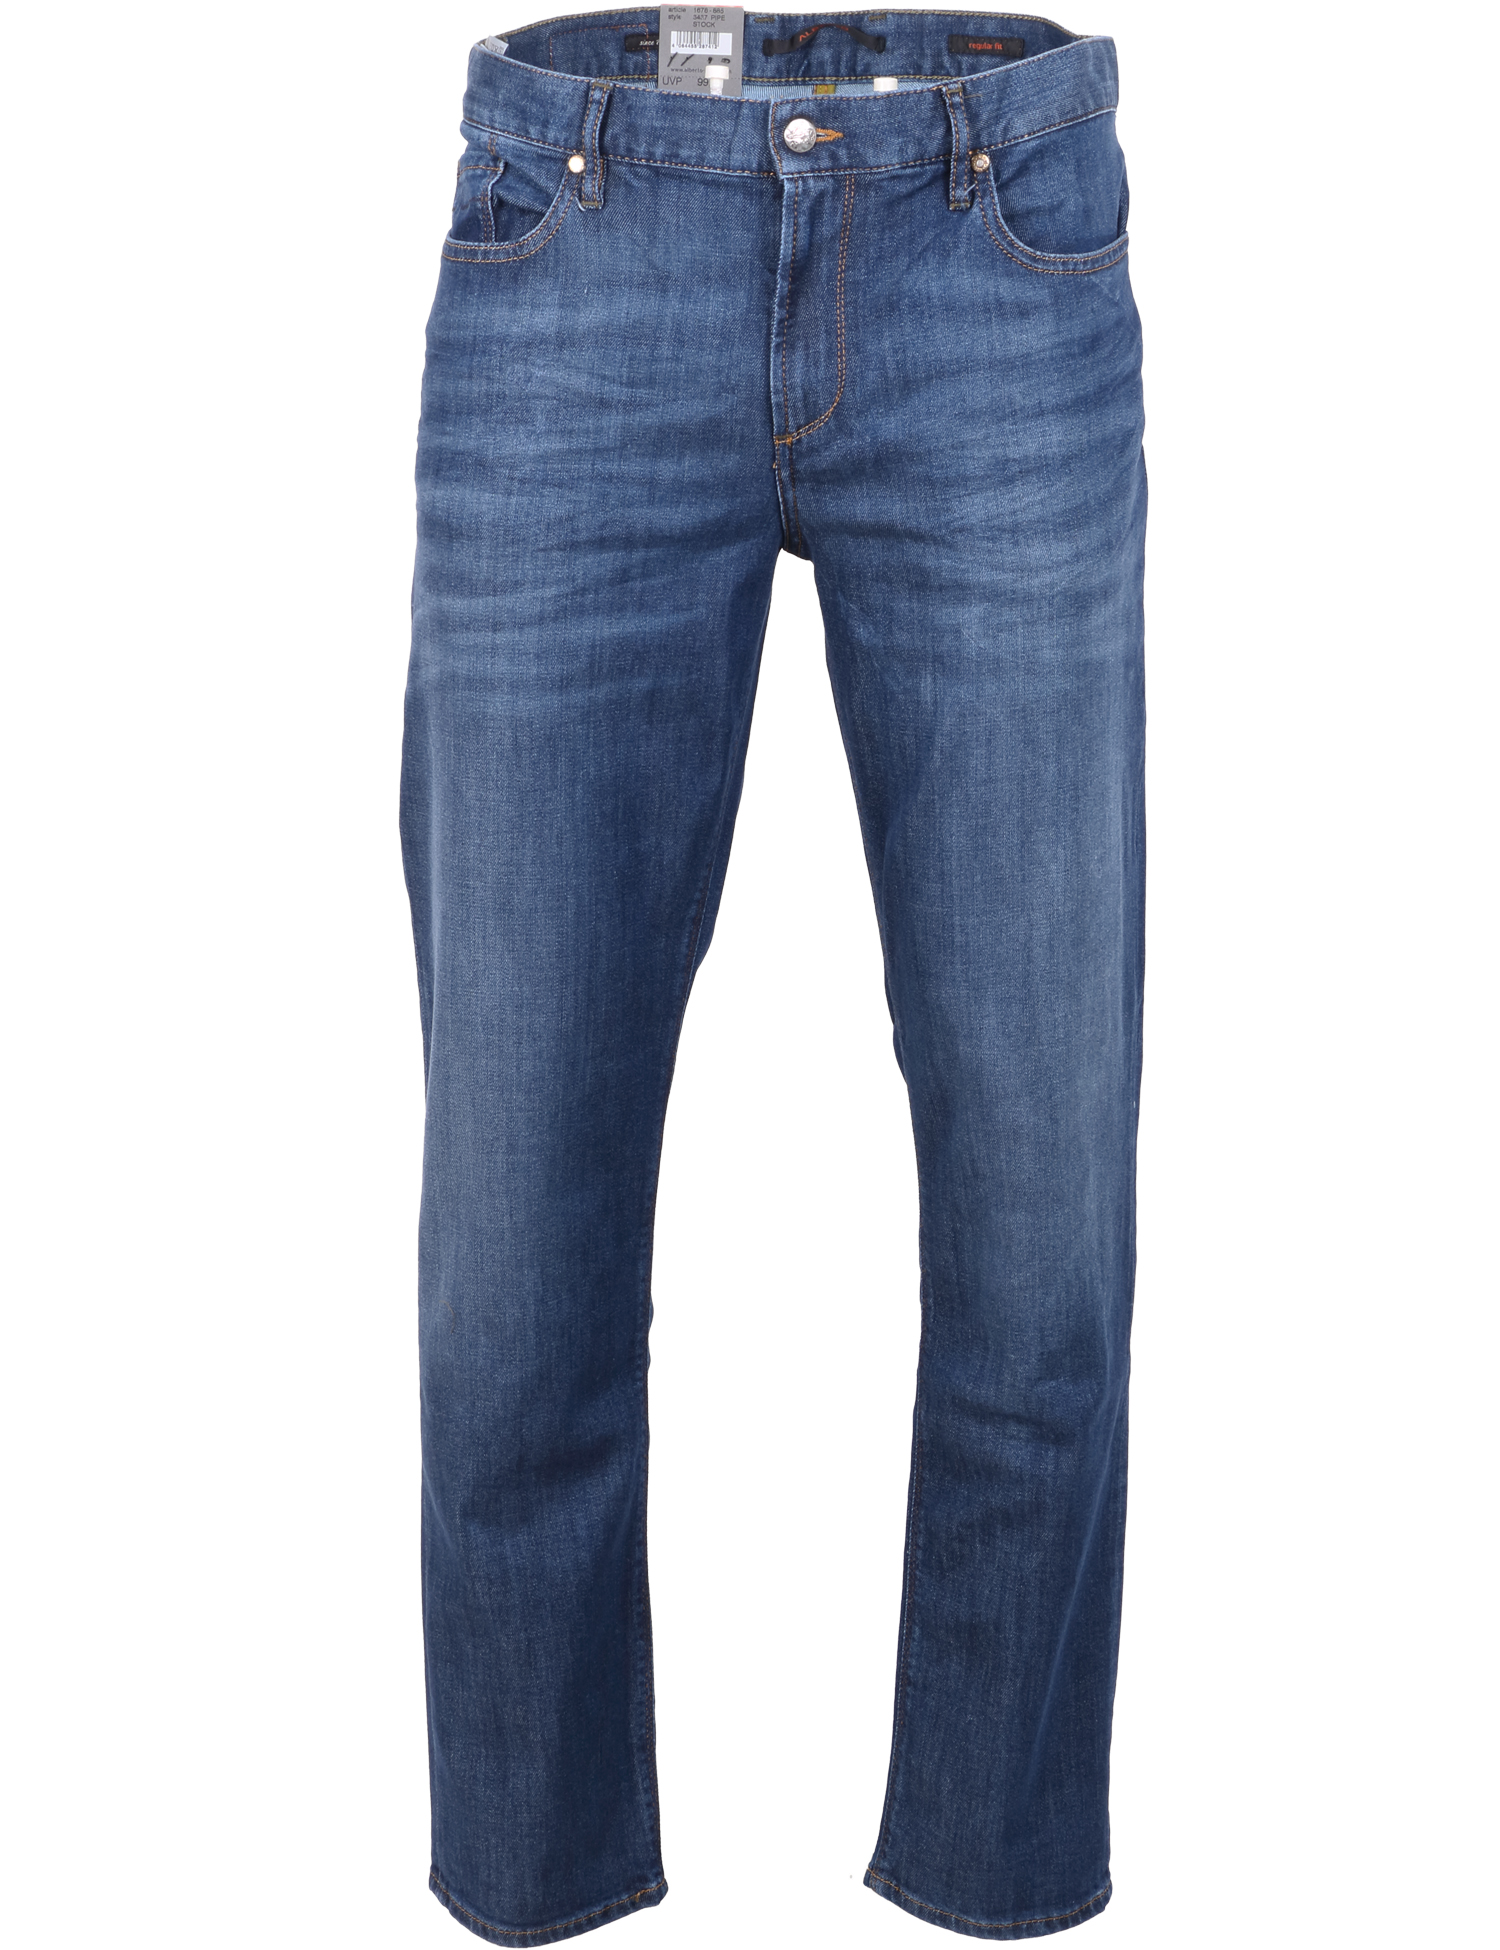 Alberto Herren Jeans Pipe regular fit - blau 33/32